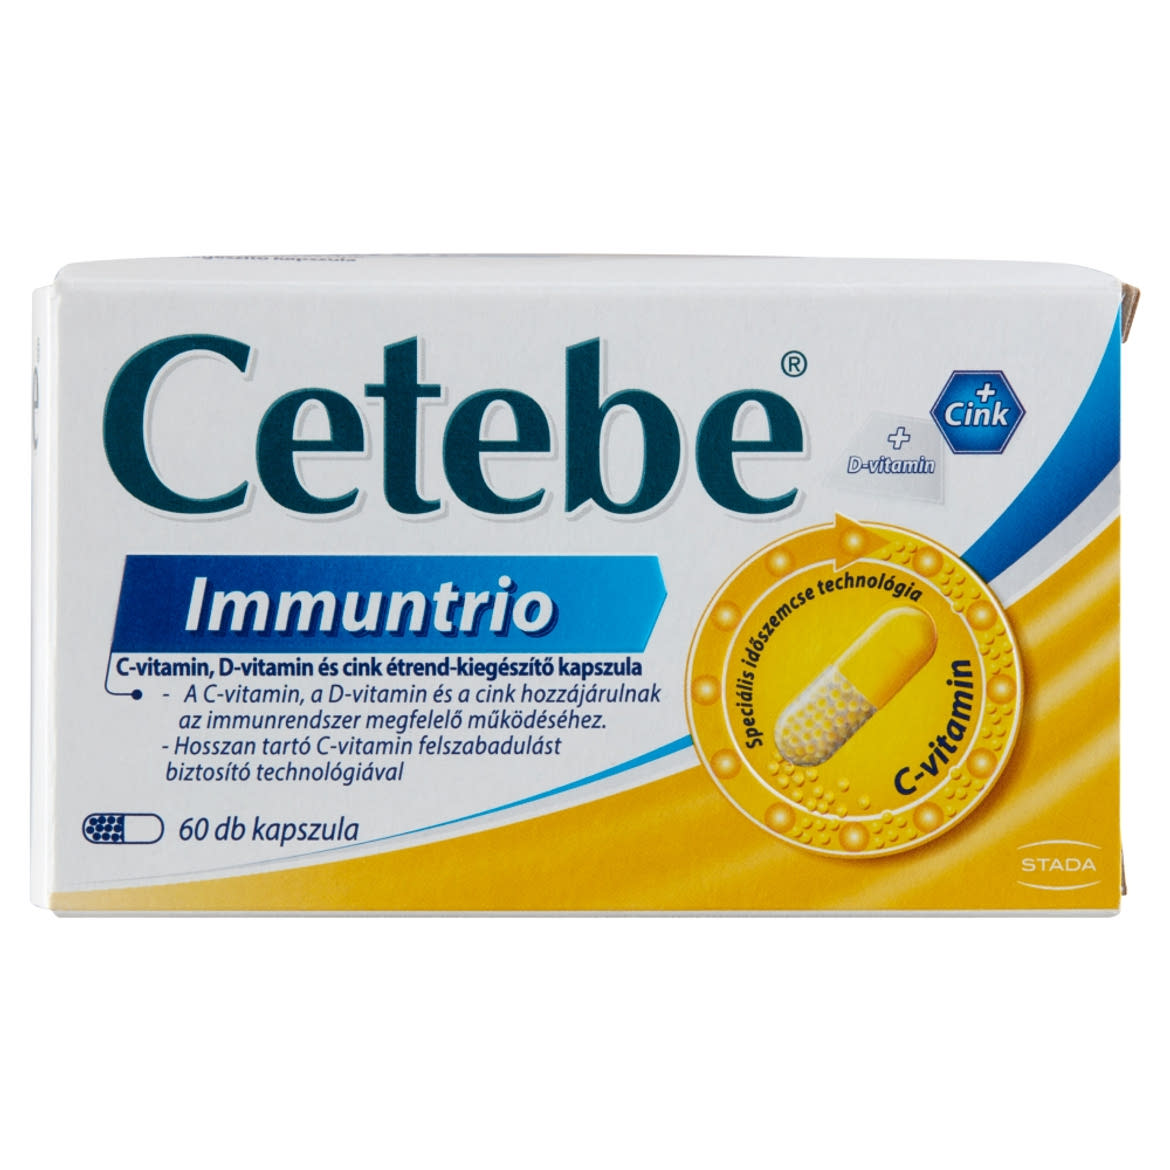 Cetebe Immuntrio C-vitamin, D-vitamin és cink étrend-kiegészítő kapszula 60 db